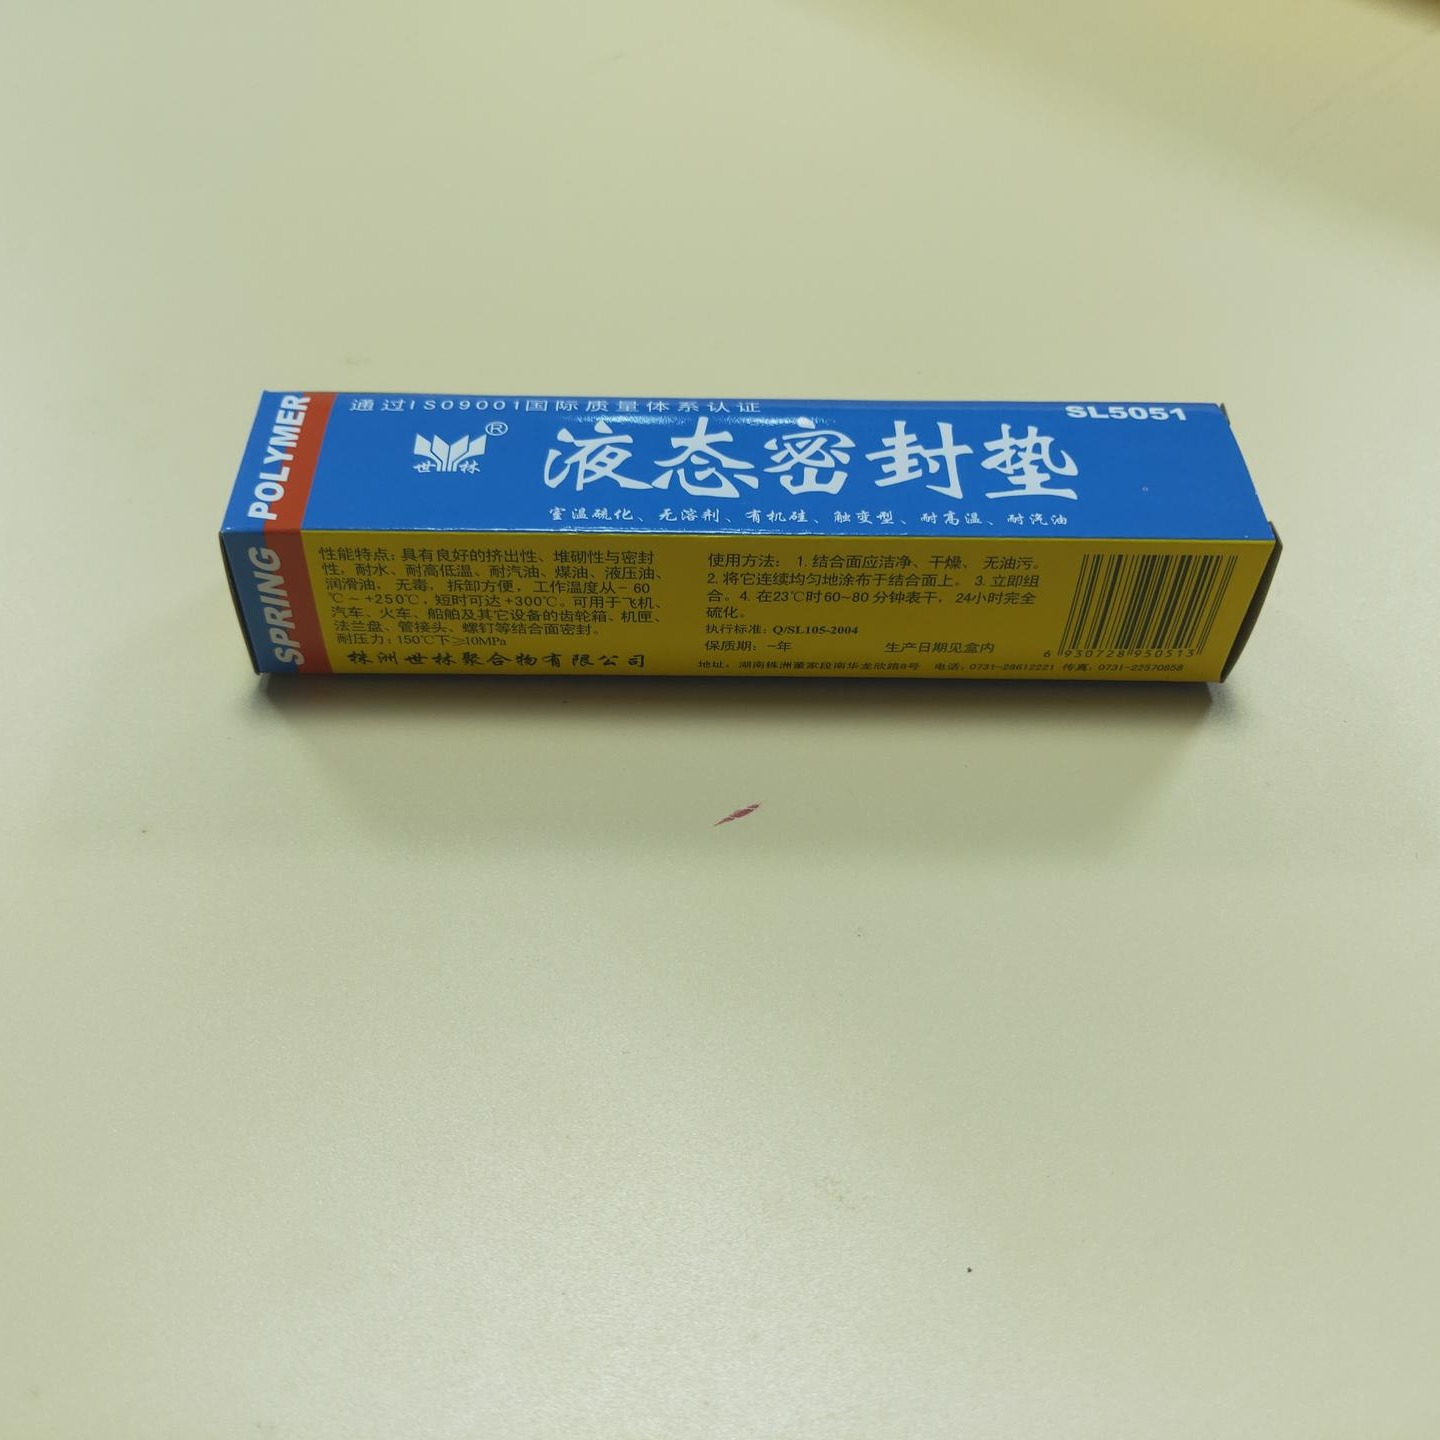 防水密封胶 潍坊 世林胶业替代进口高温密封胶SL5051